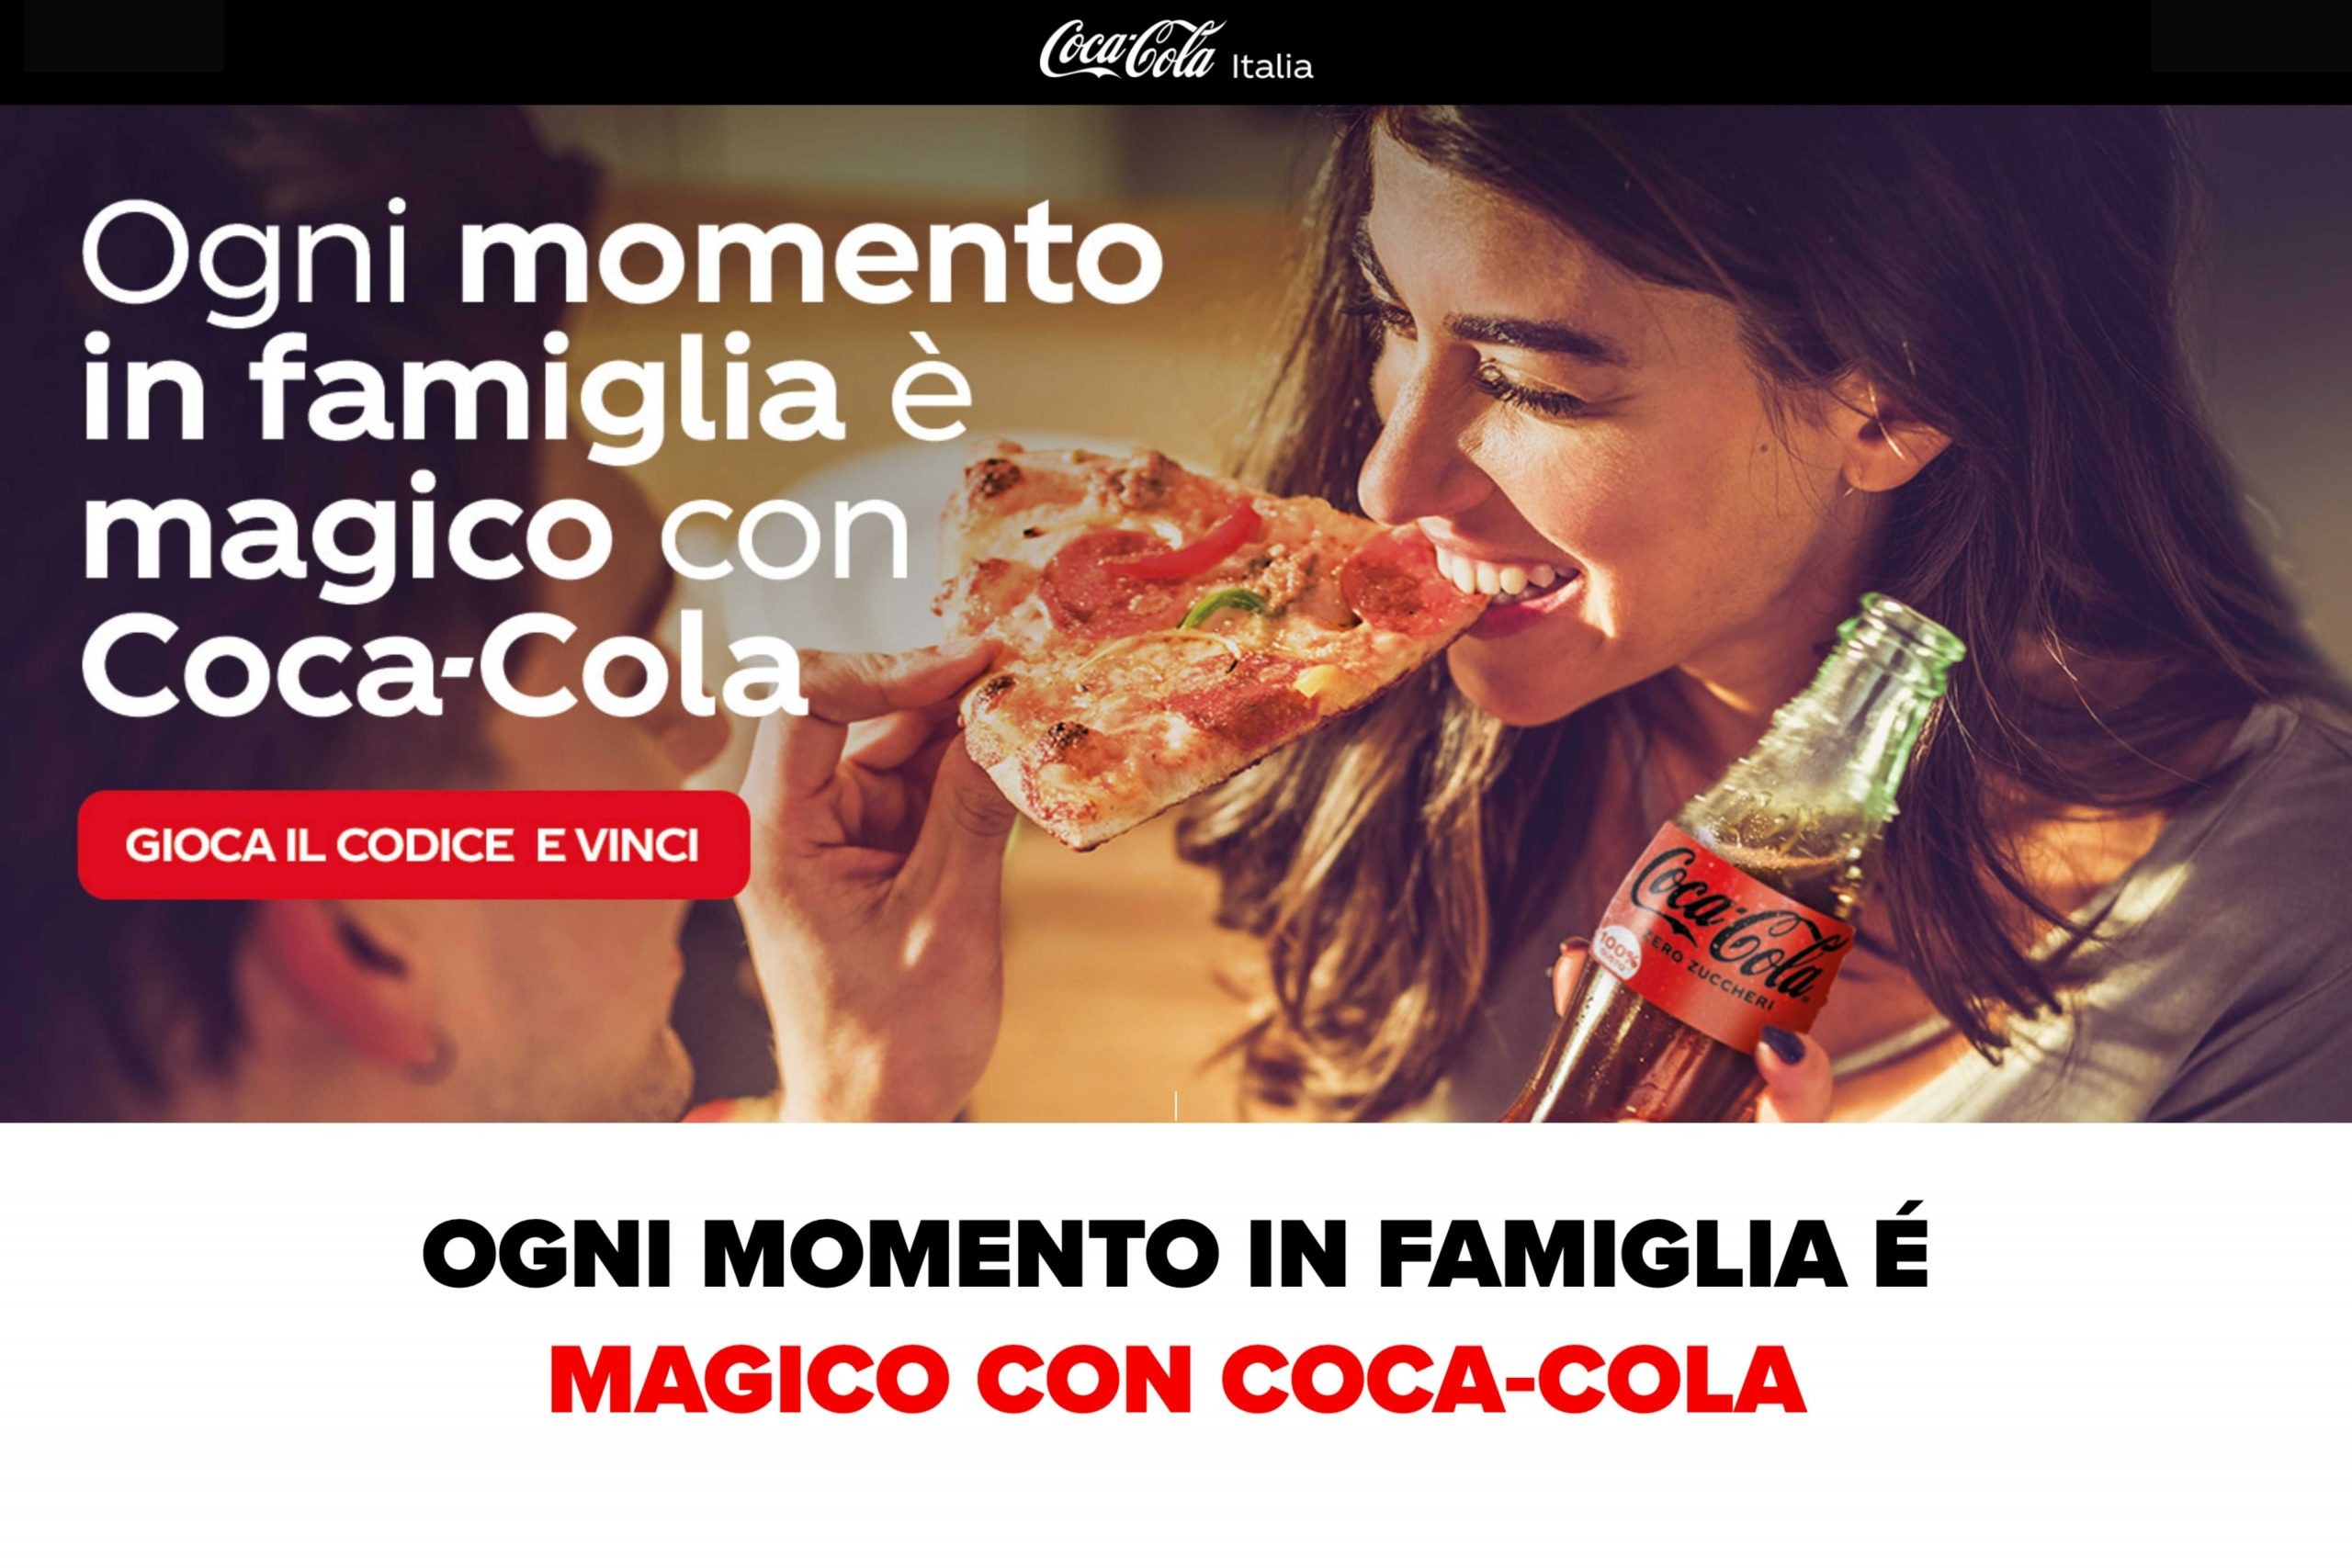 Concorso “Ogni momento in famiglia è magico con Coca-Cola”: come vincere premi brandizzati, proiettori Samsung e bicchieri personalizzati